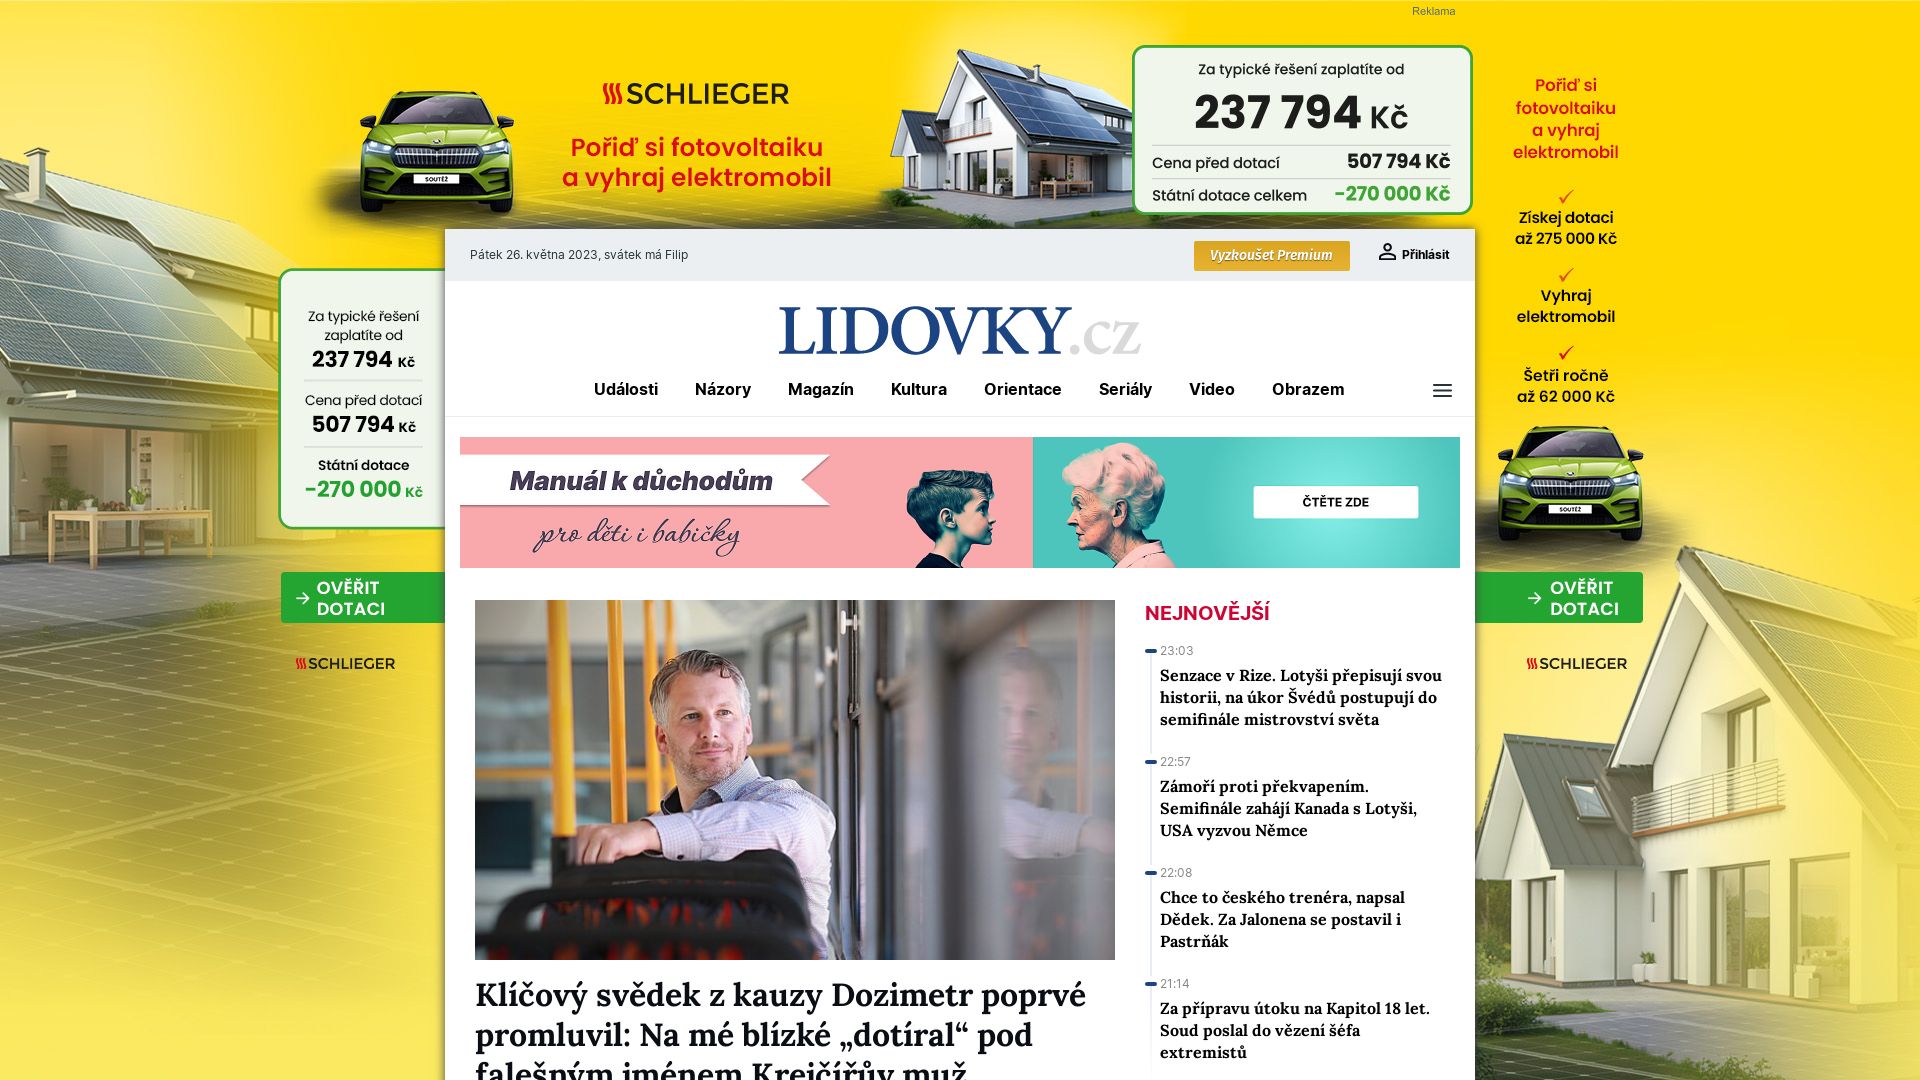 Status do site lidovky.cz está   ONLINE